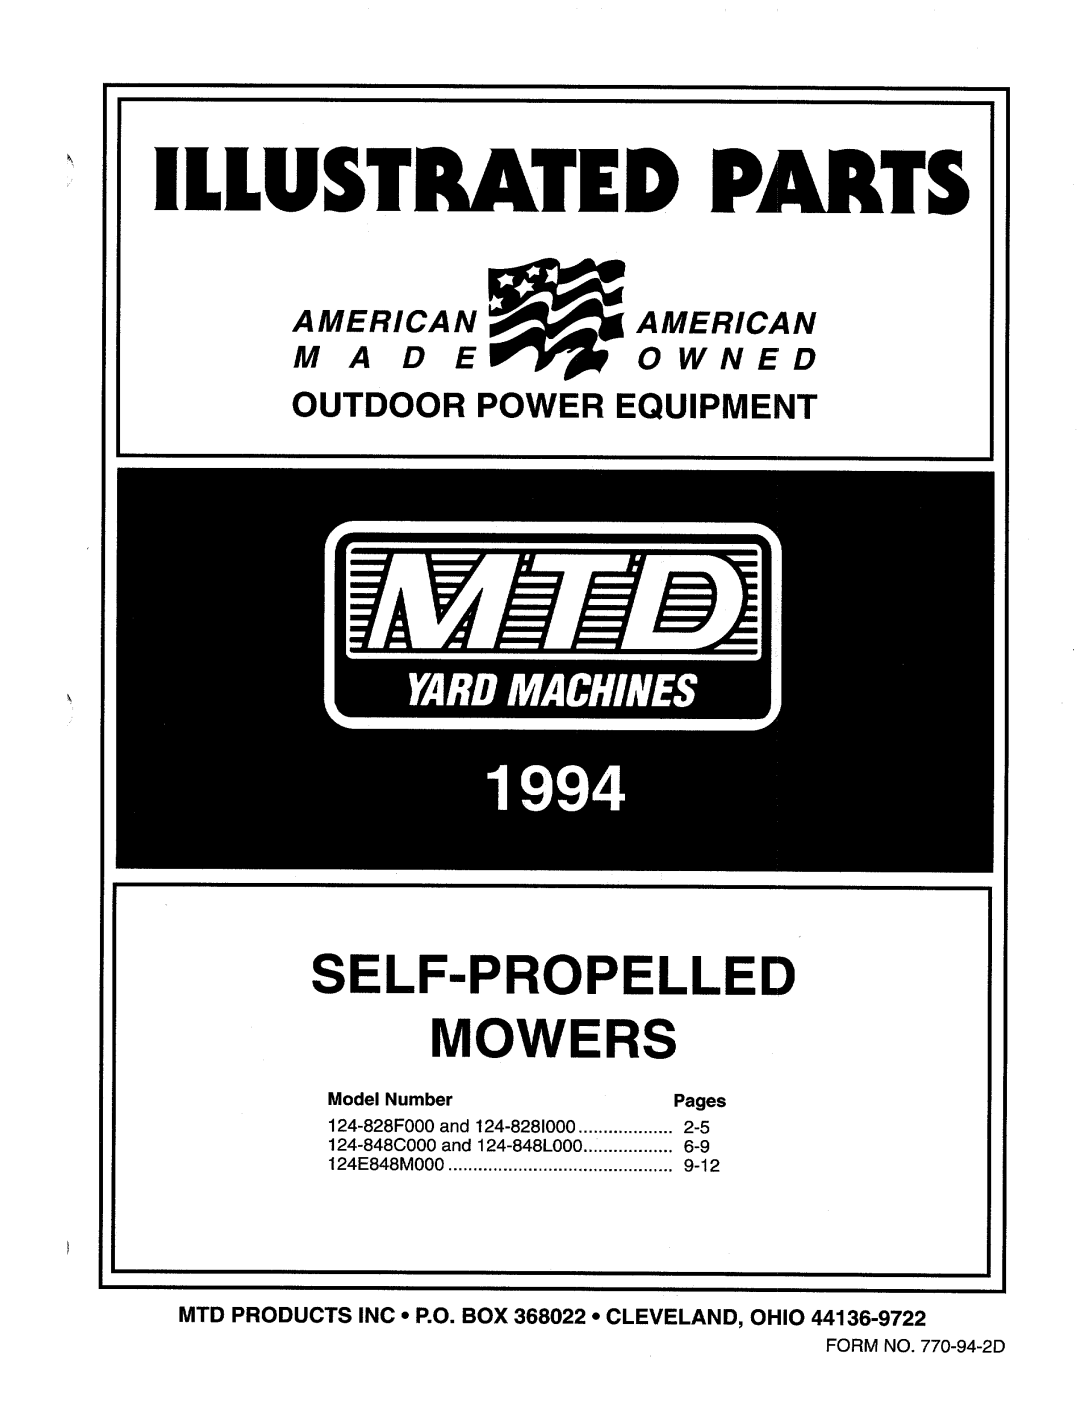 MTD 124E848M000, 124-848M000, 124-848C000, 124-848L000 manual 